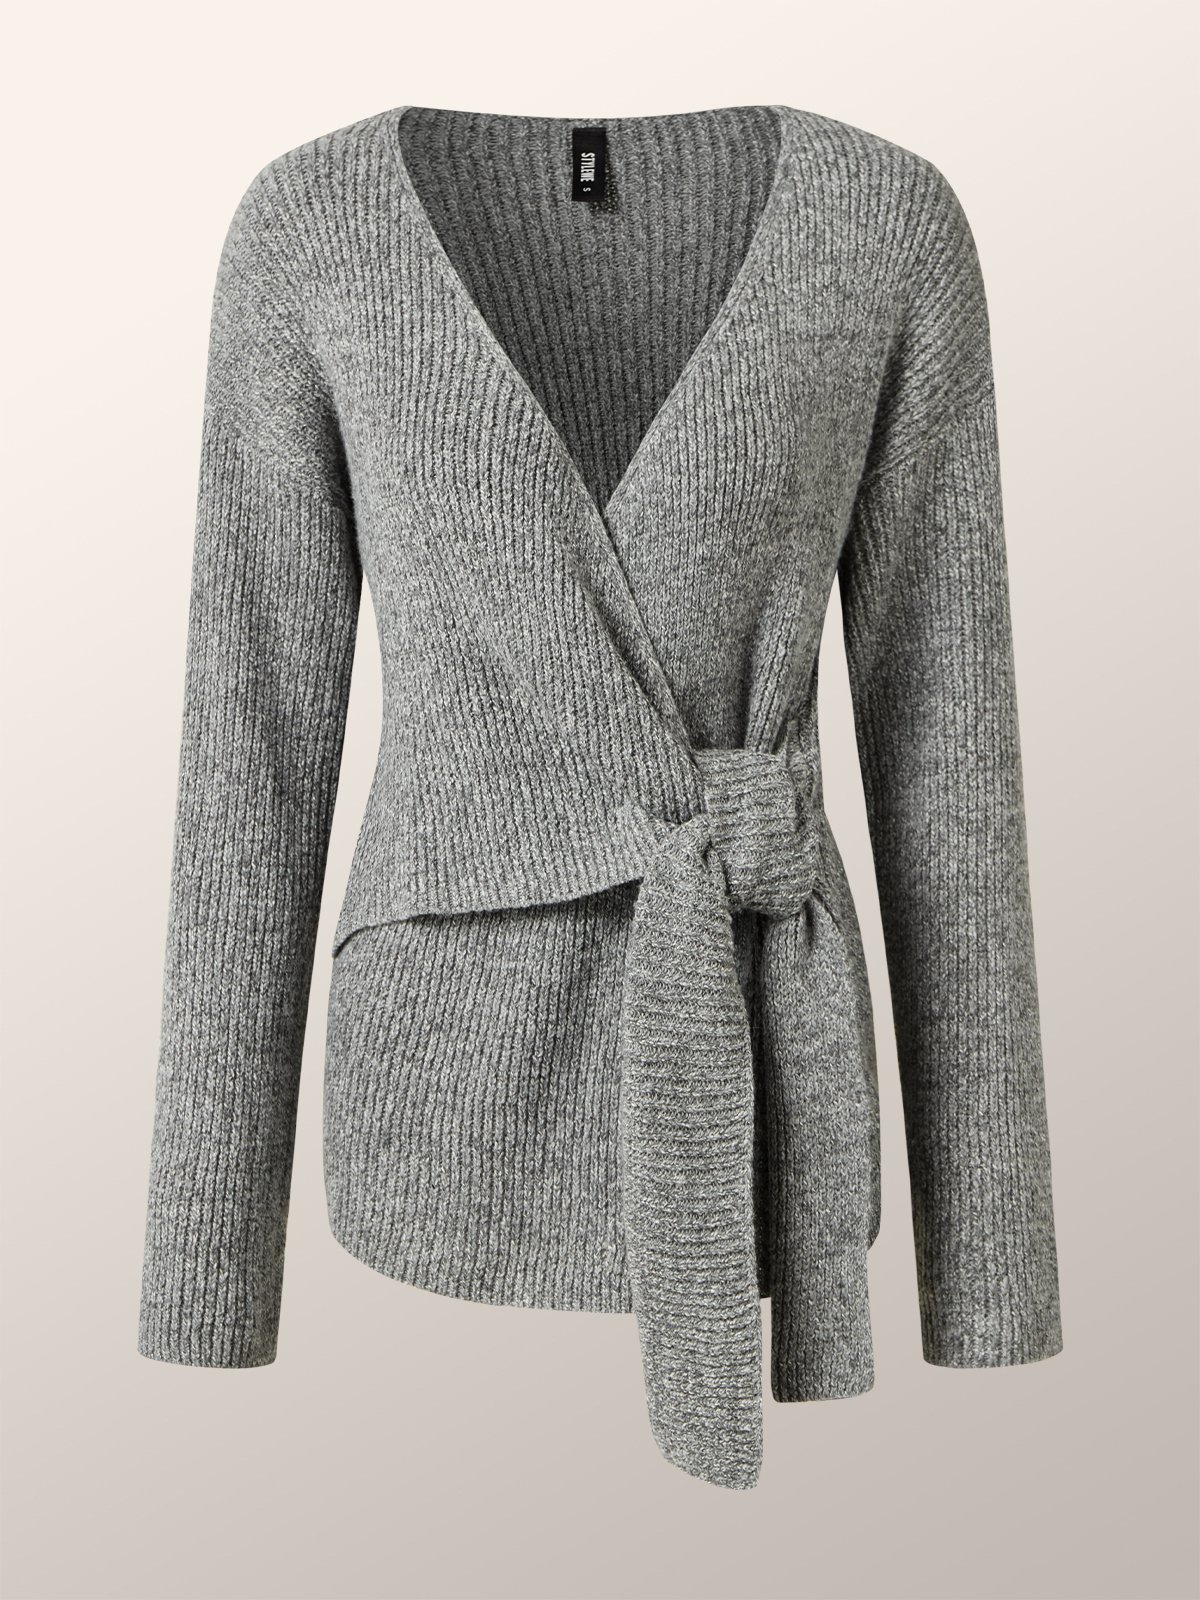 Einfach Langarm Unifarben Kreuzhals Pullover Mantel